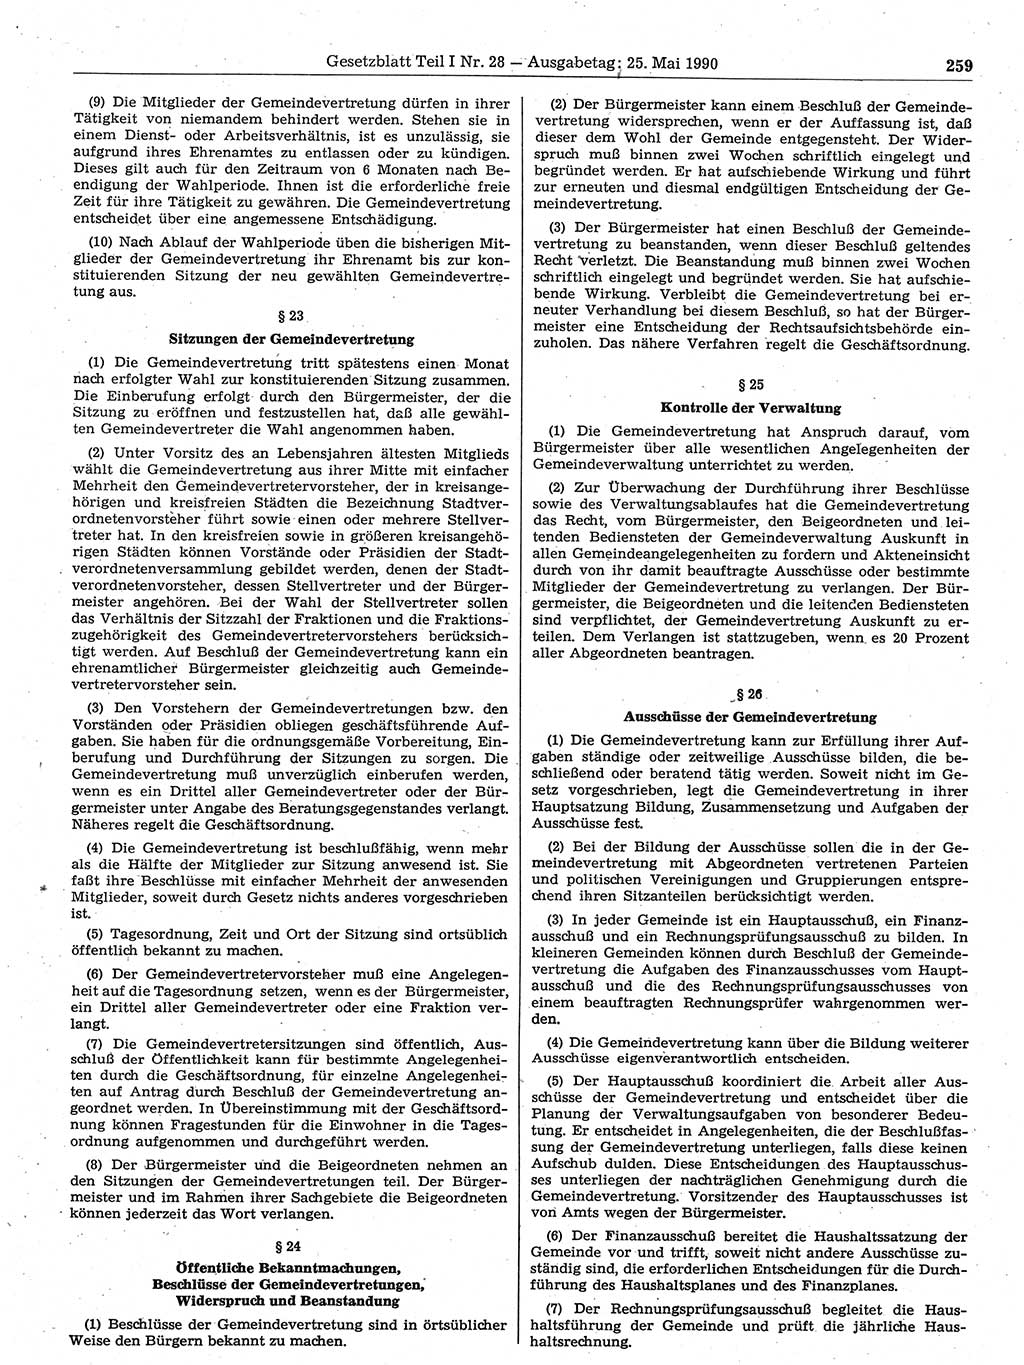 Gesetzblatt (GBl.) der Deutschen Demokratischen Republik (DDR) Teil Ⅰ 1990, Seite 259 (GBl. DDR Ⅰ 1990, S. 259)